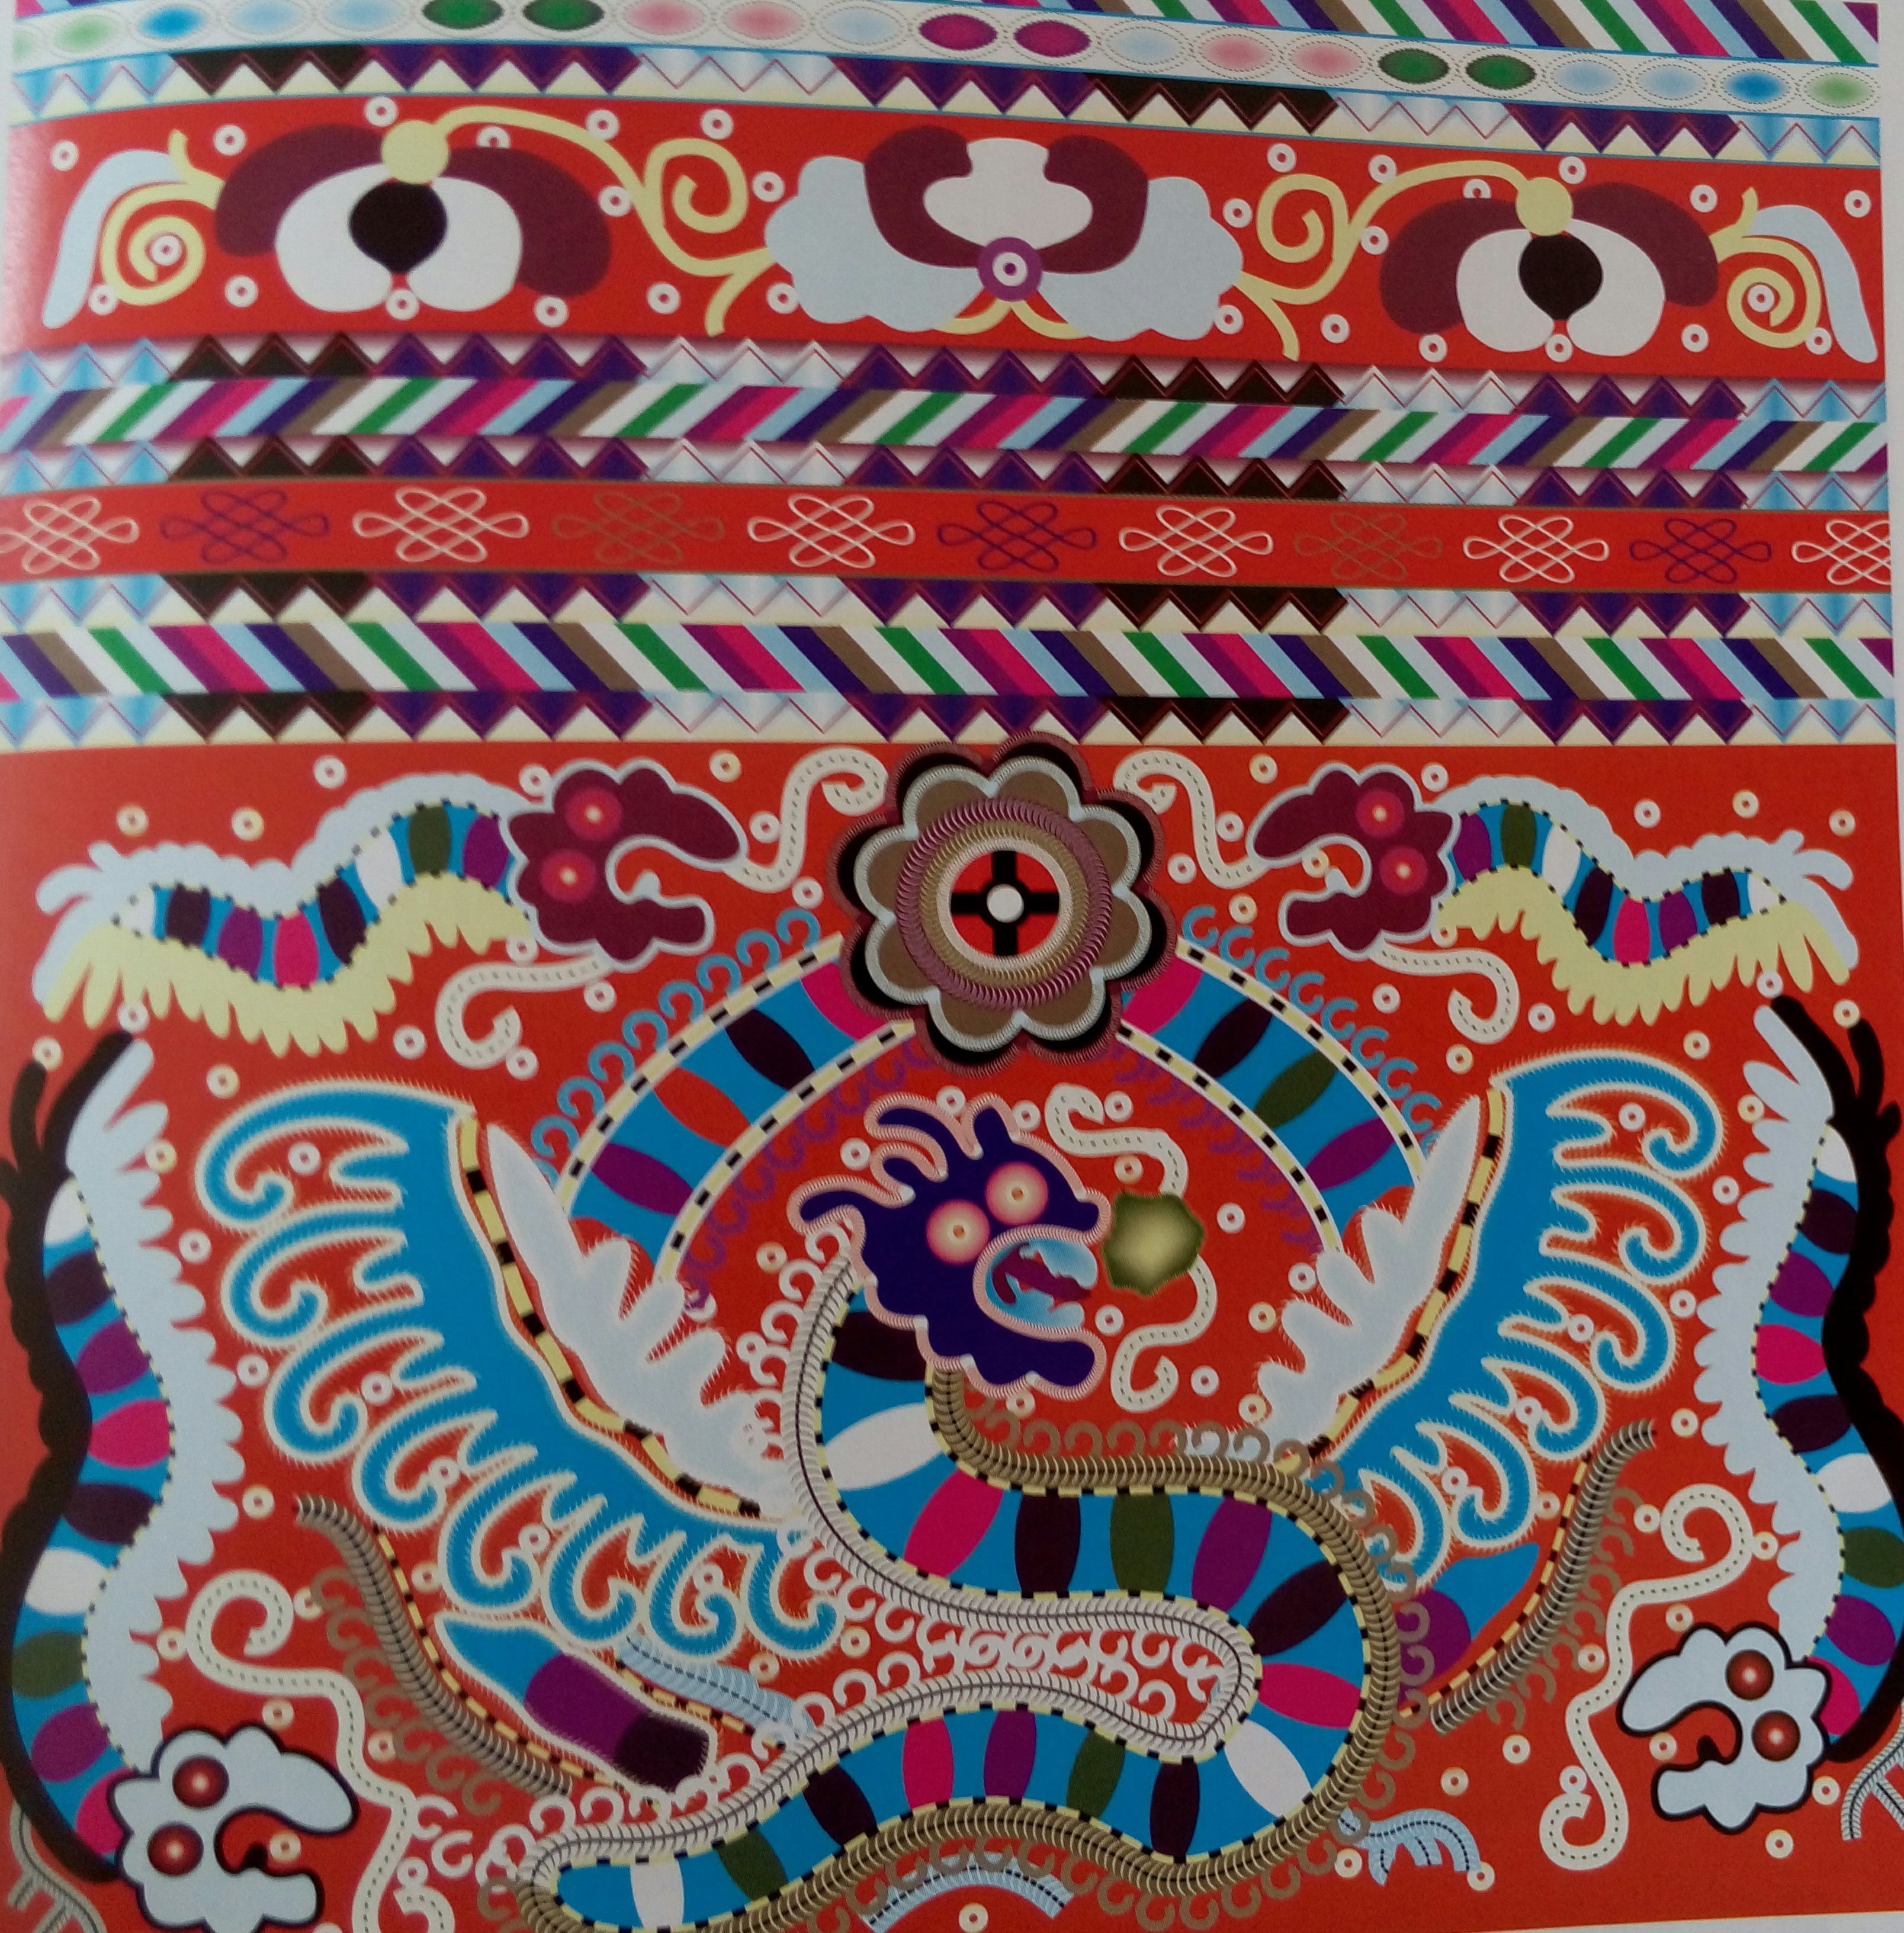 中国传统刺绣与织物图案